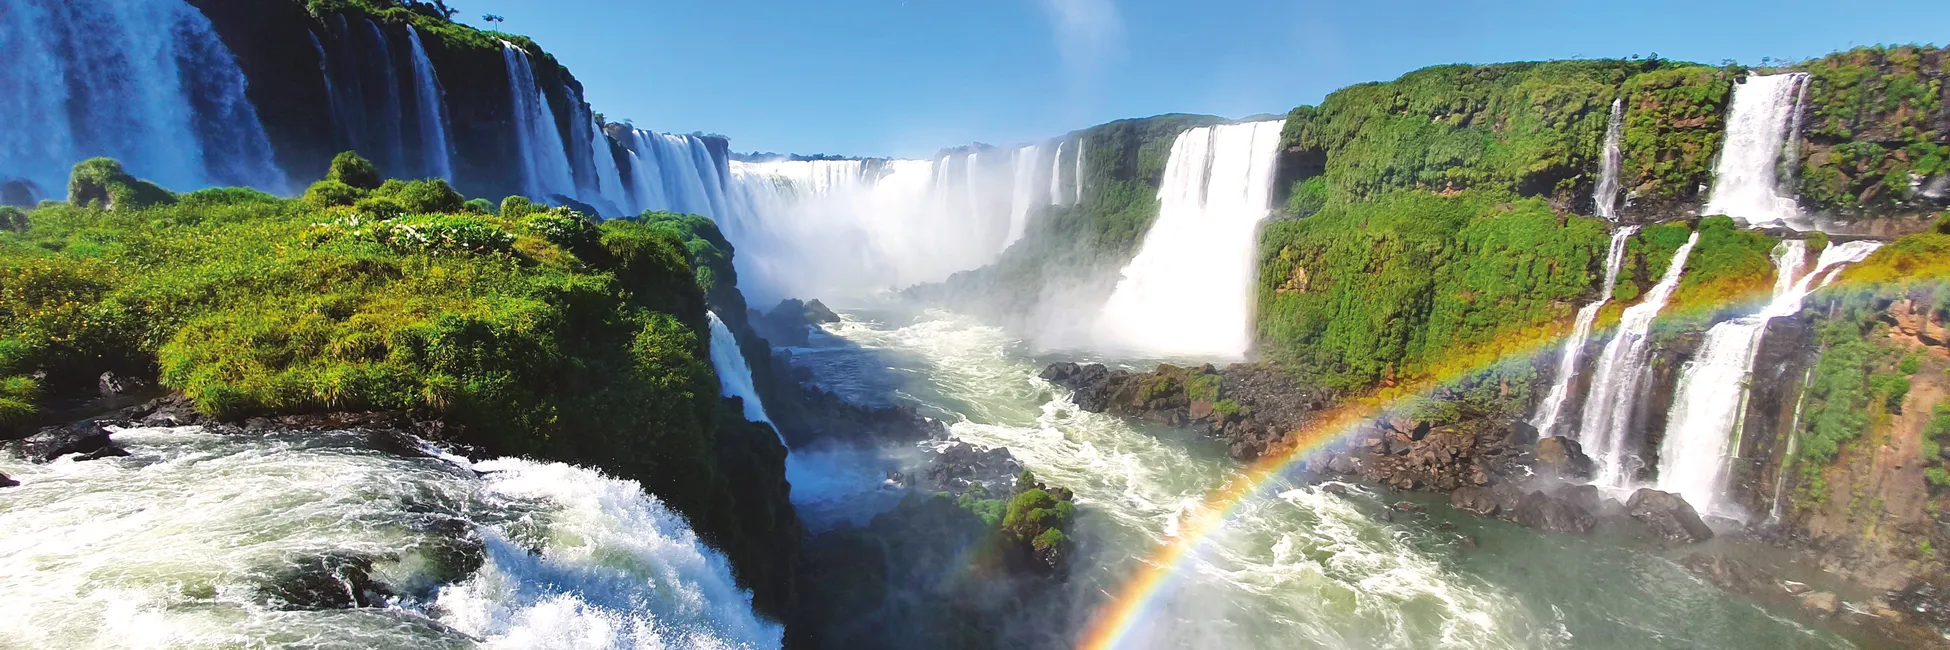 Les chutes d'Iguaçu au Brésil 